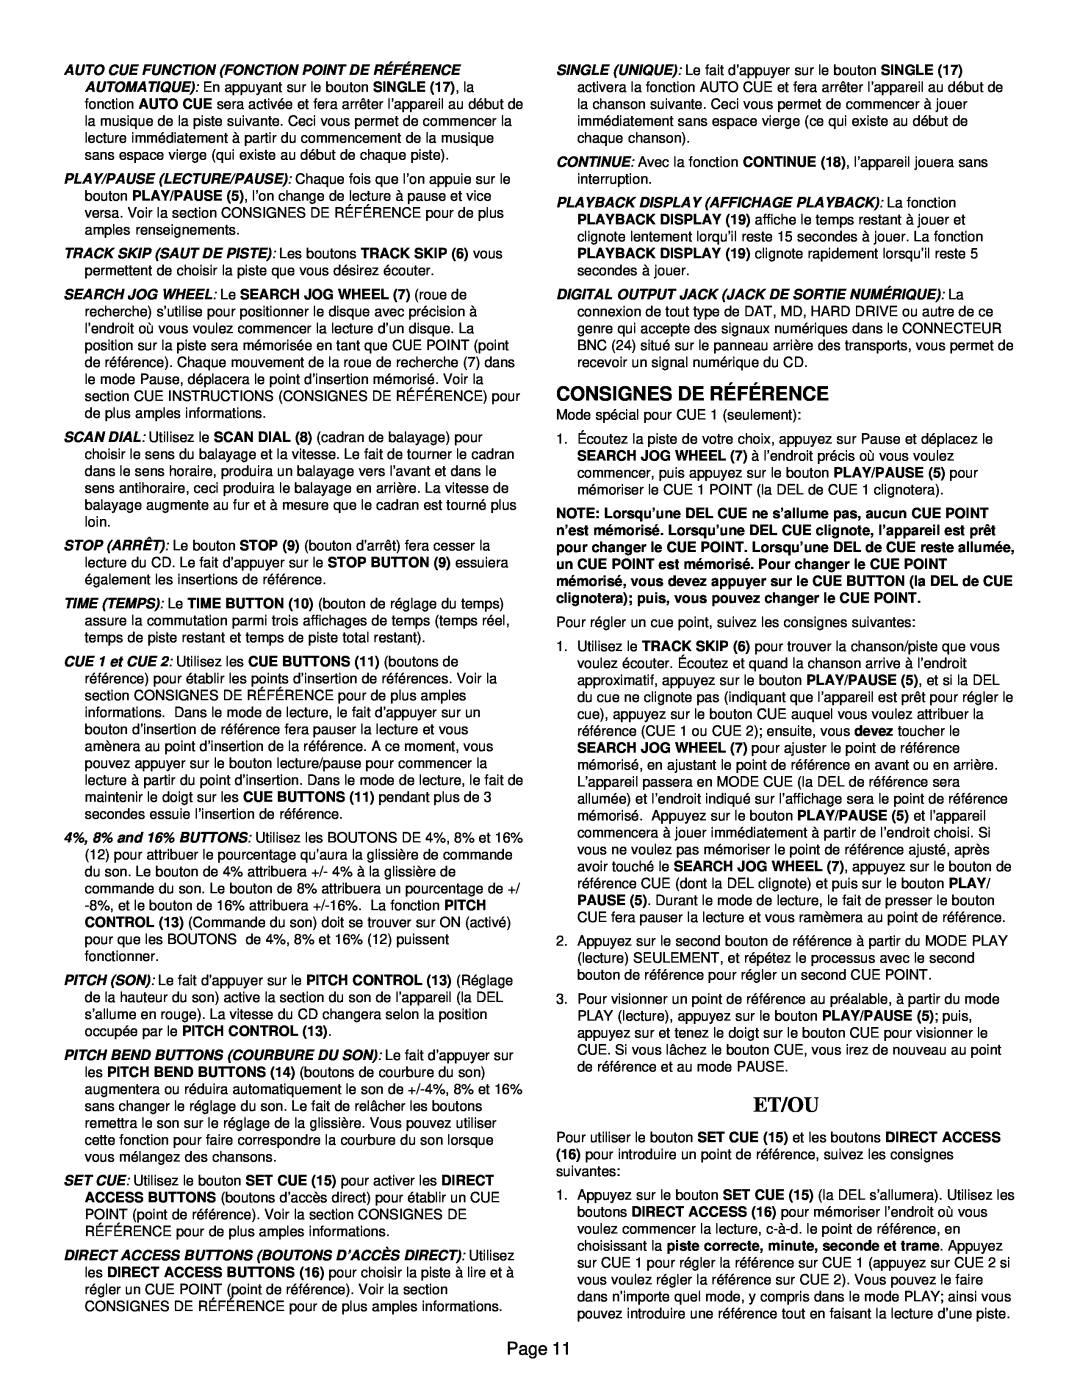 Gemini CD-9800 manual Et/Ou, Consignes De Référence, Page 